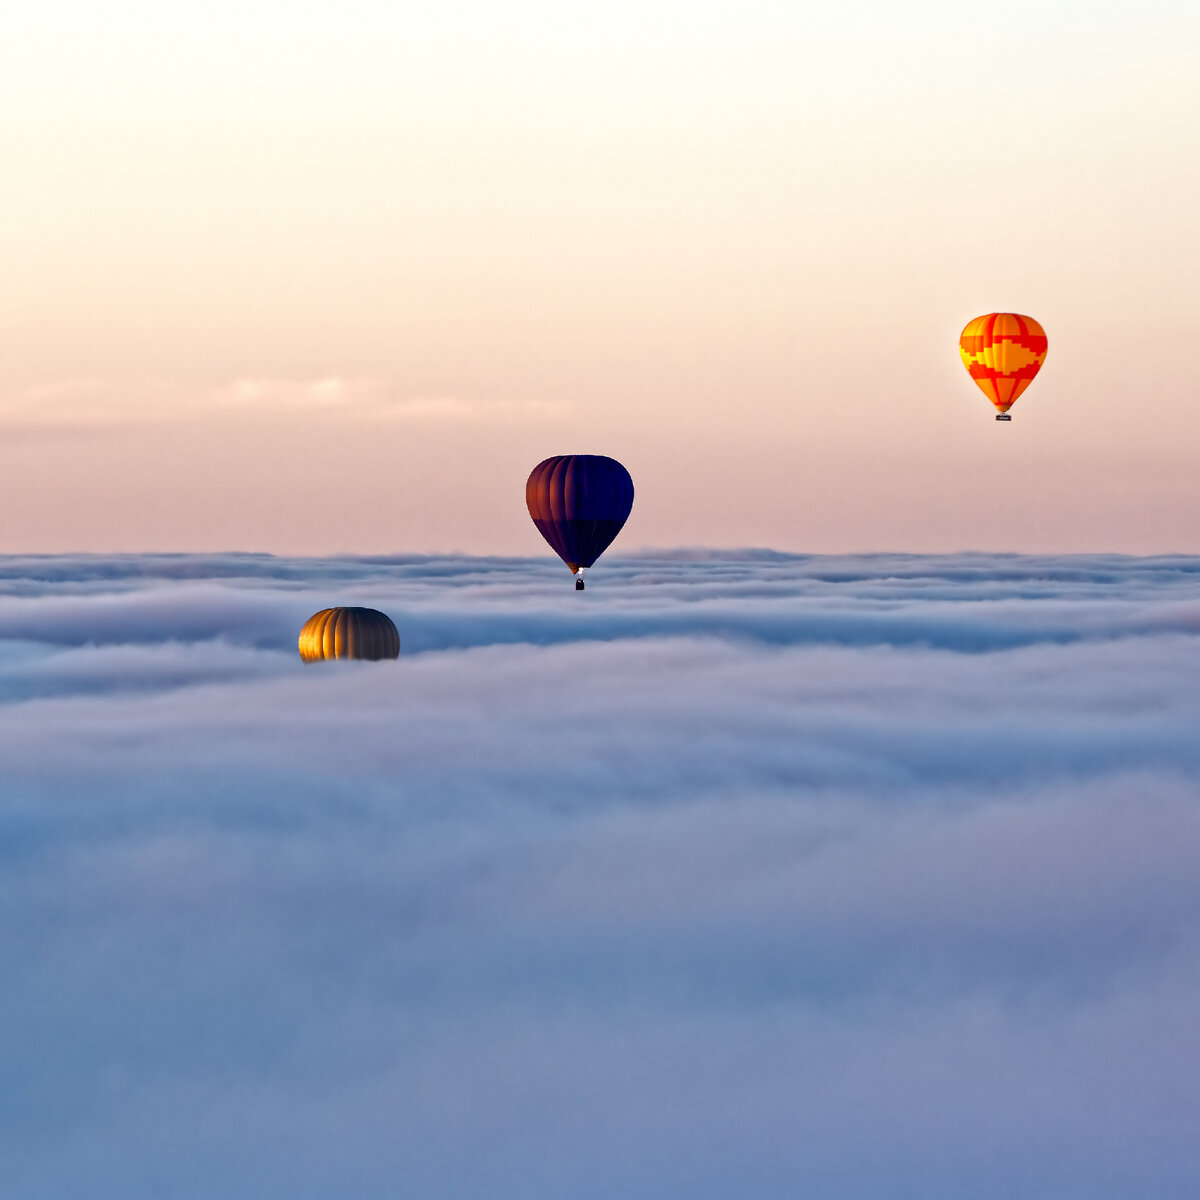 Хотите полетать на воздушном шаре в феврале?